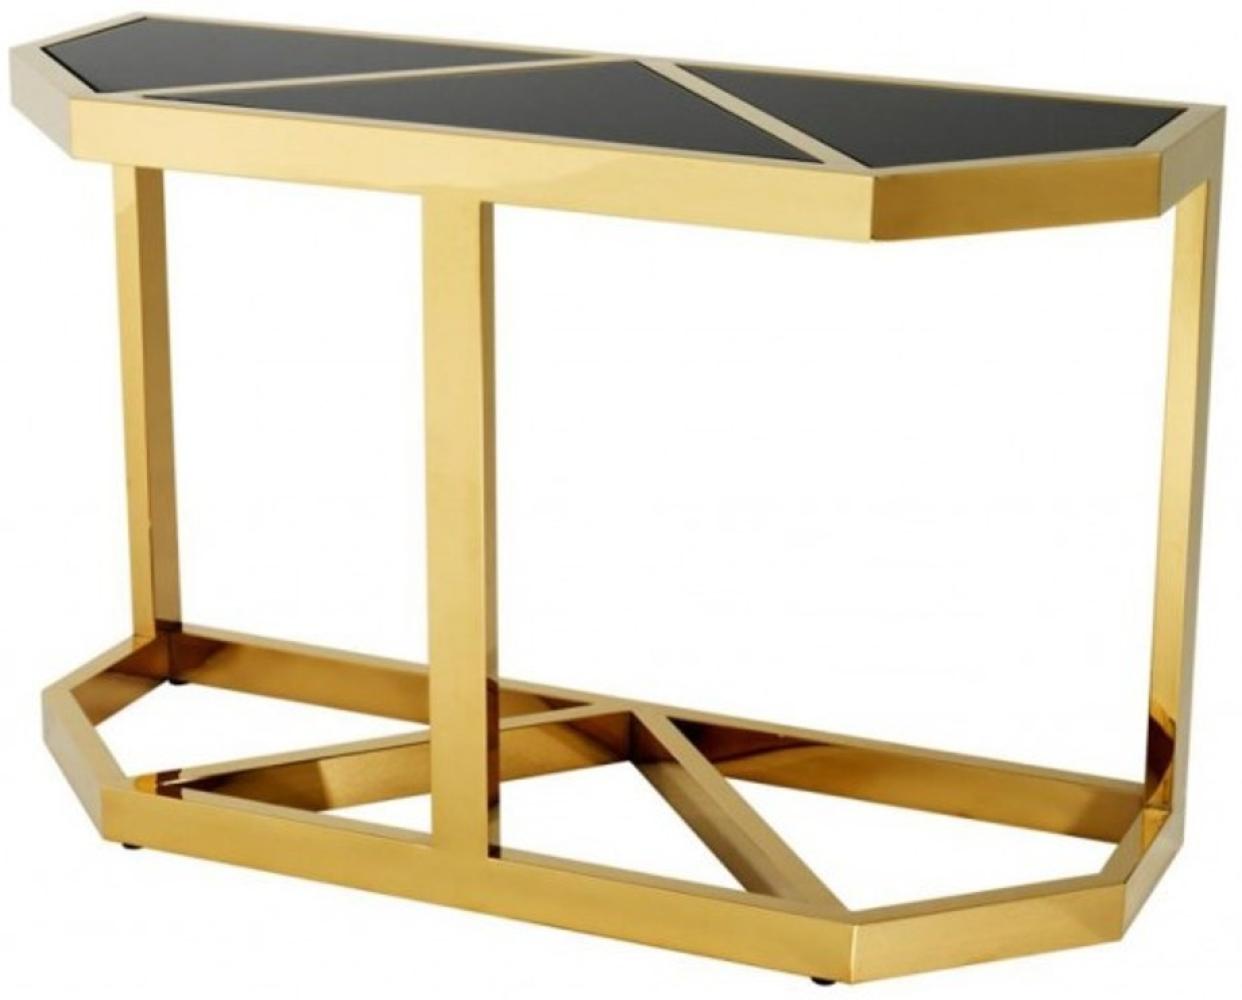 Casa Padrino Luxus Konsole Gold mit schwarzem Glas - Konsolen Tisch Möbel Bild 1